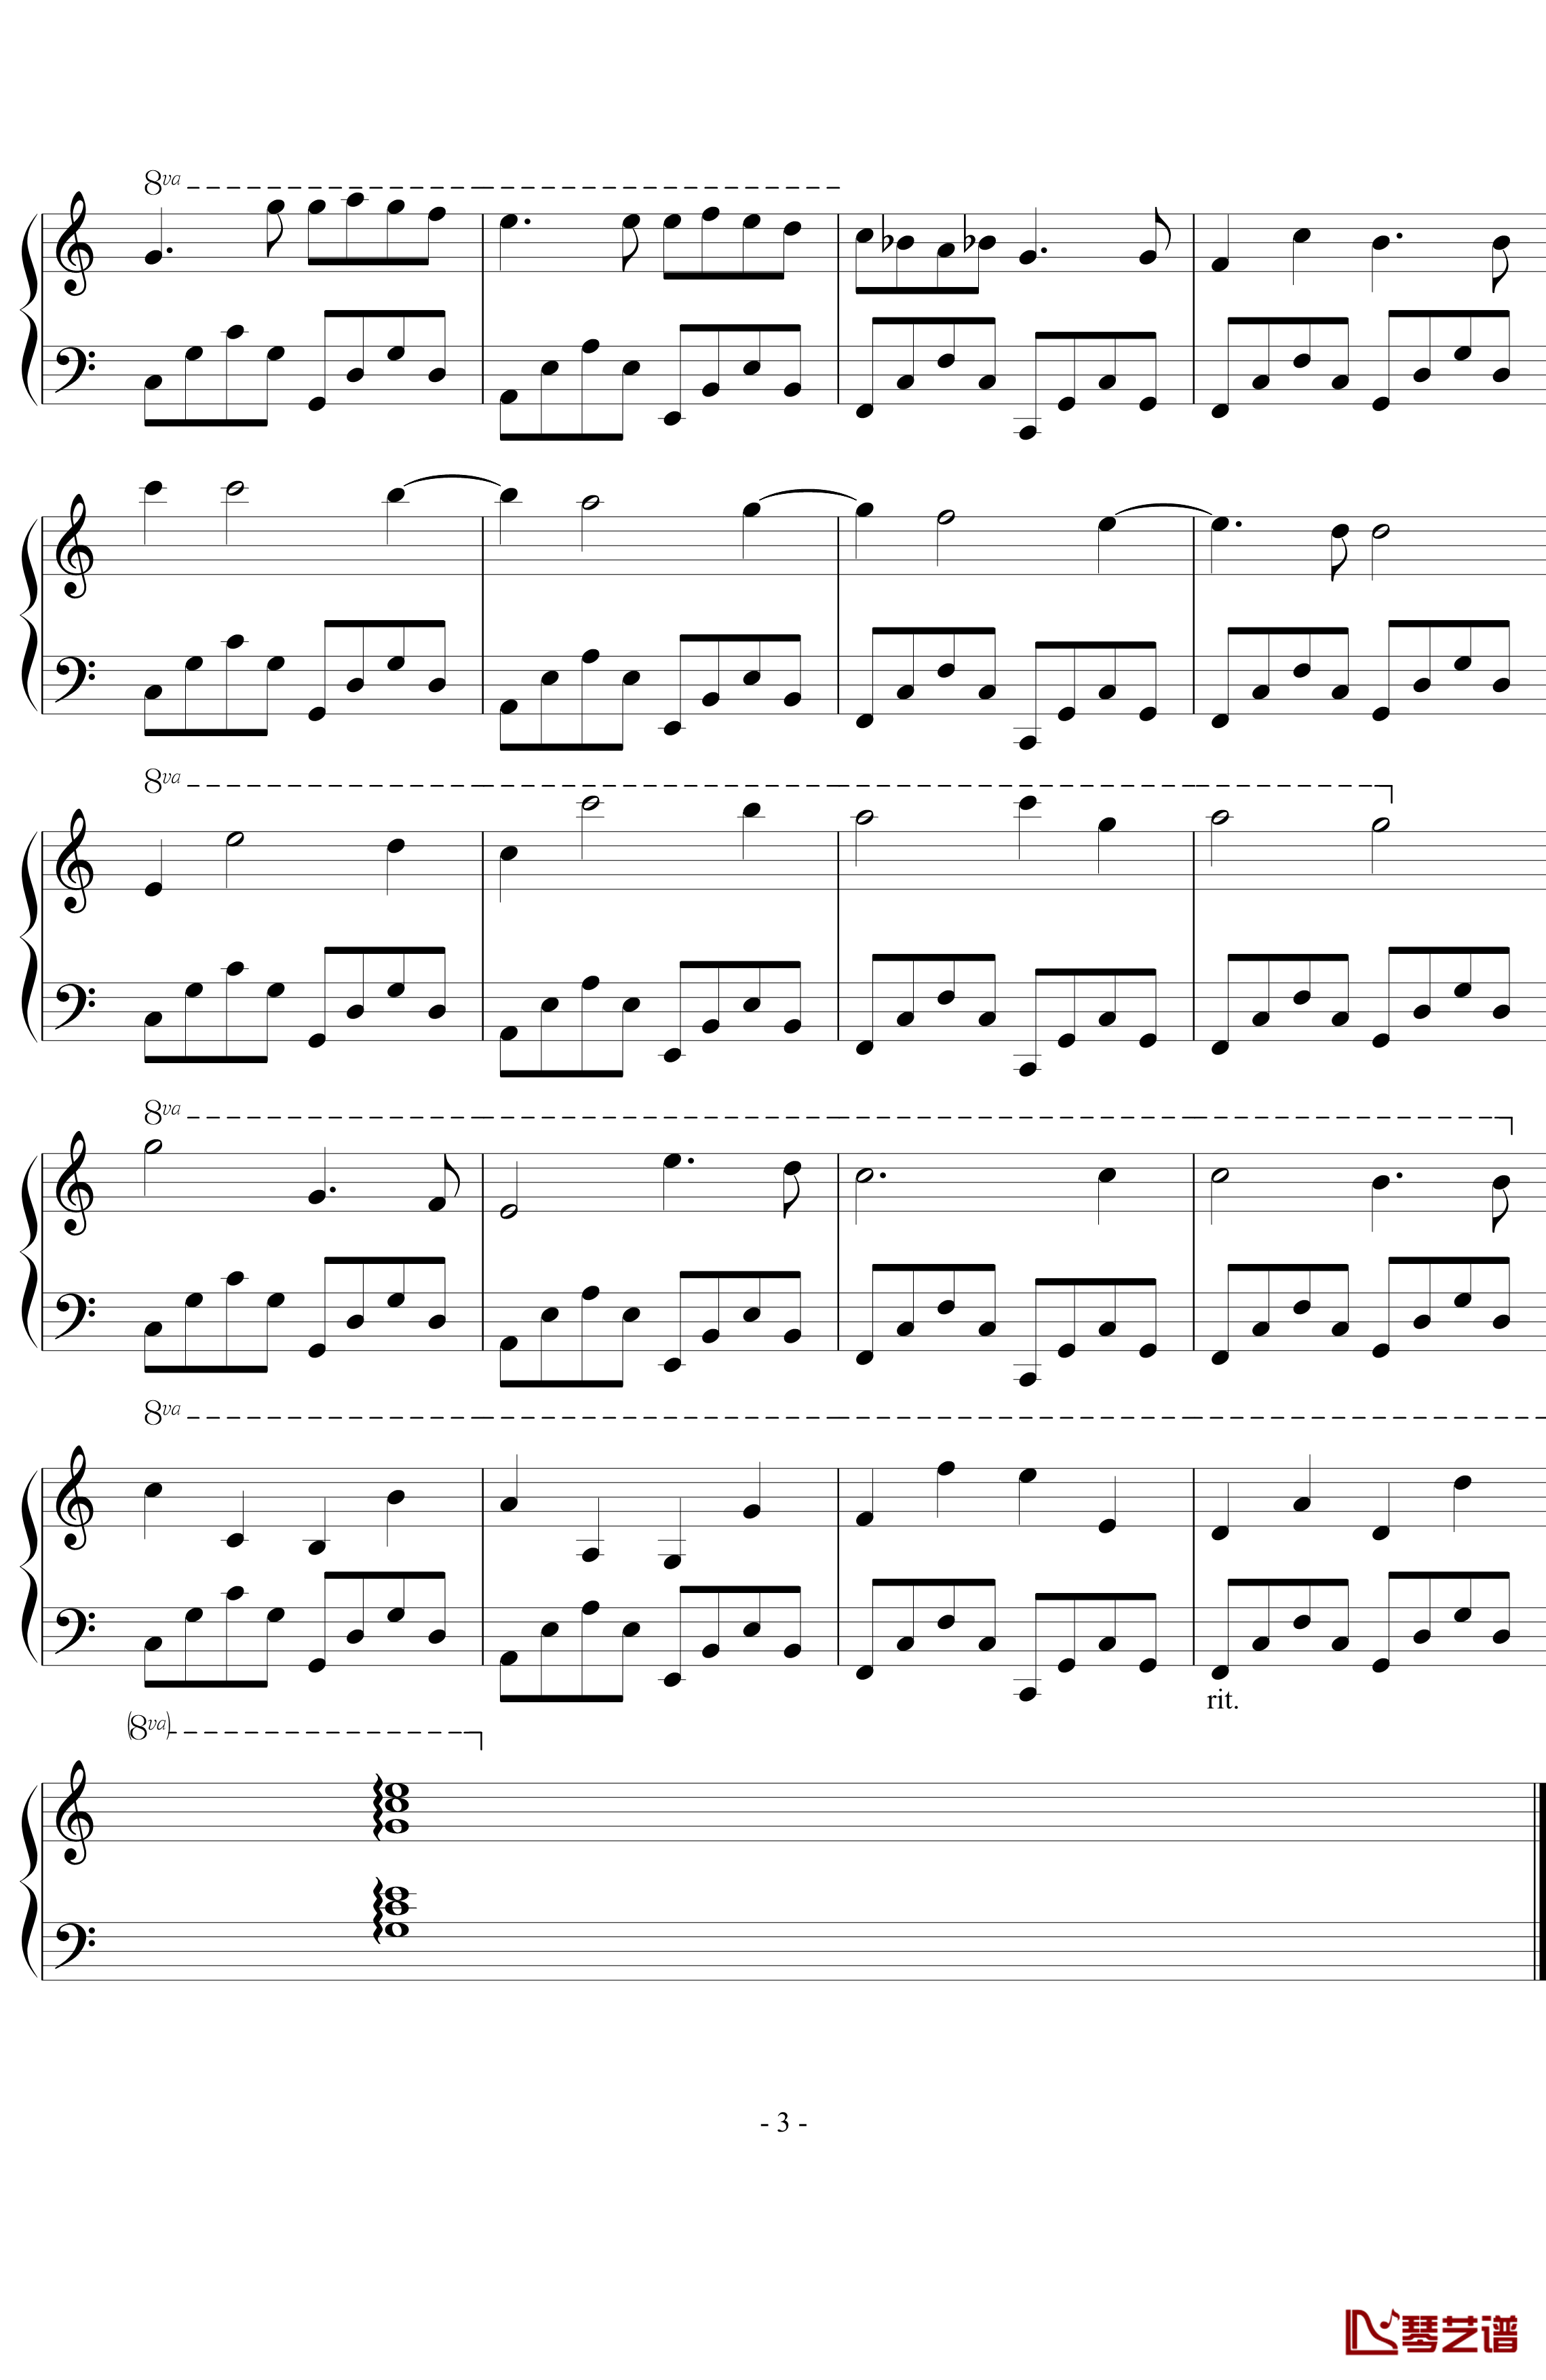 卡农钢琴谱-简易版-帕赫贝尔-Pachelbel3